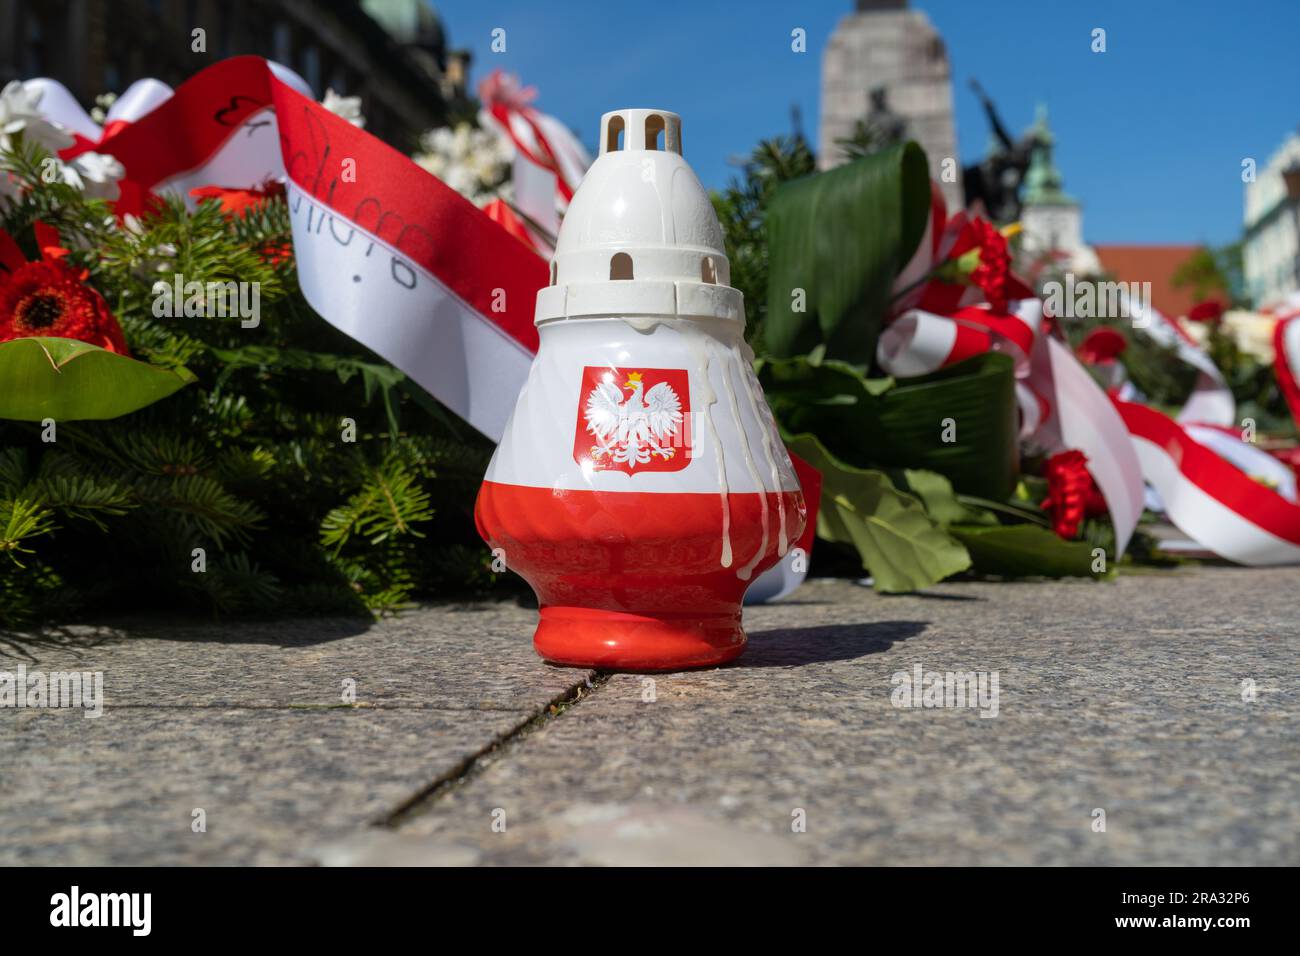 Patriotische Grabkerze in weiß-roter Farbe der polnischen Flagge, mit dem Wappen Polens. Stockfoto